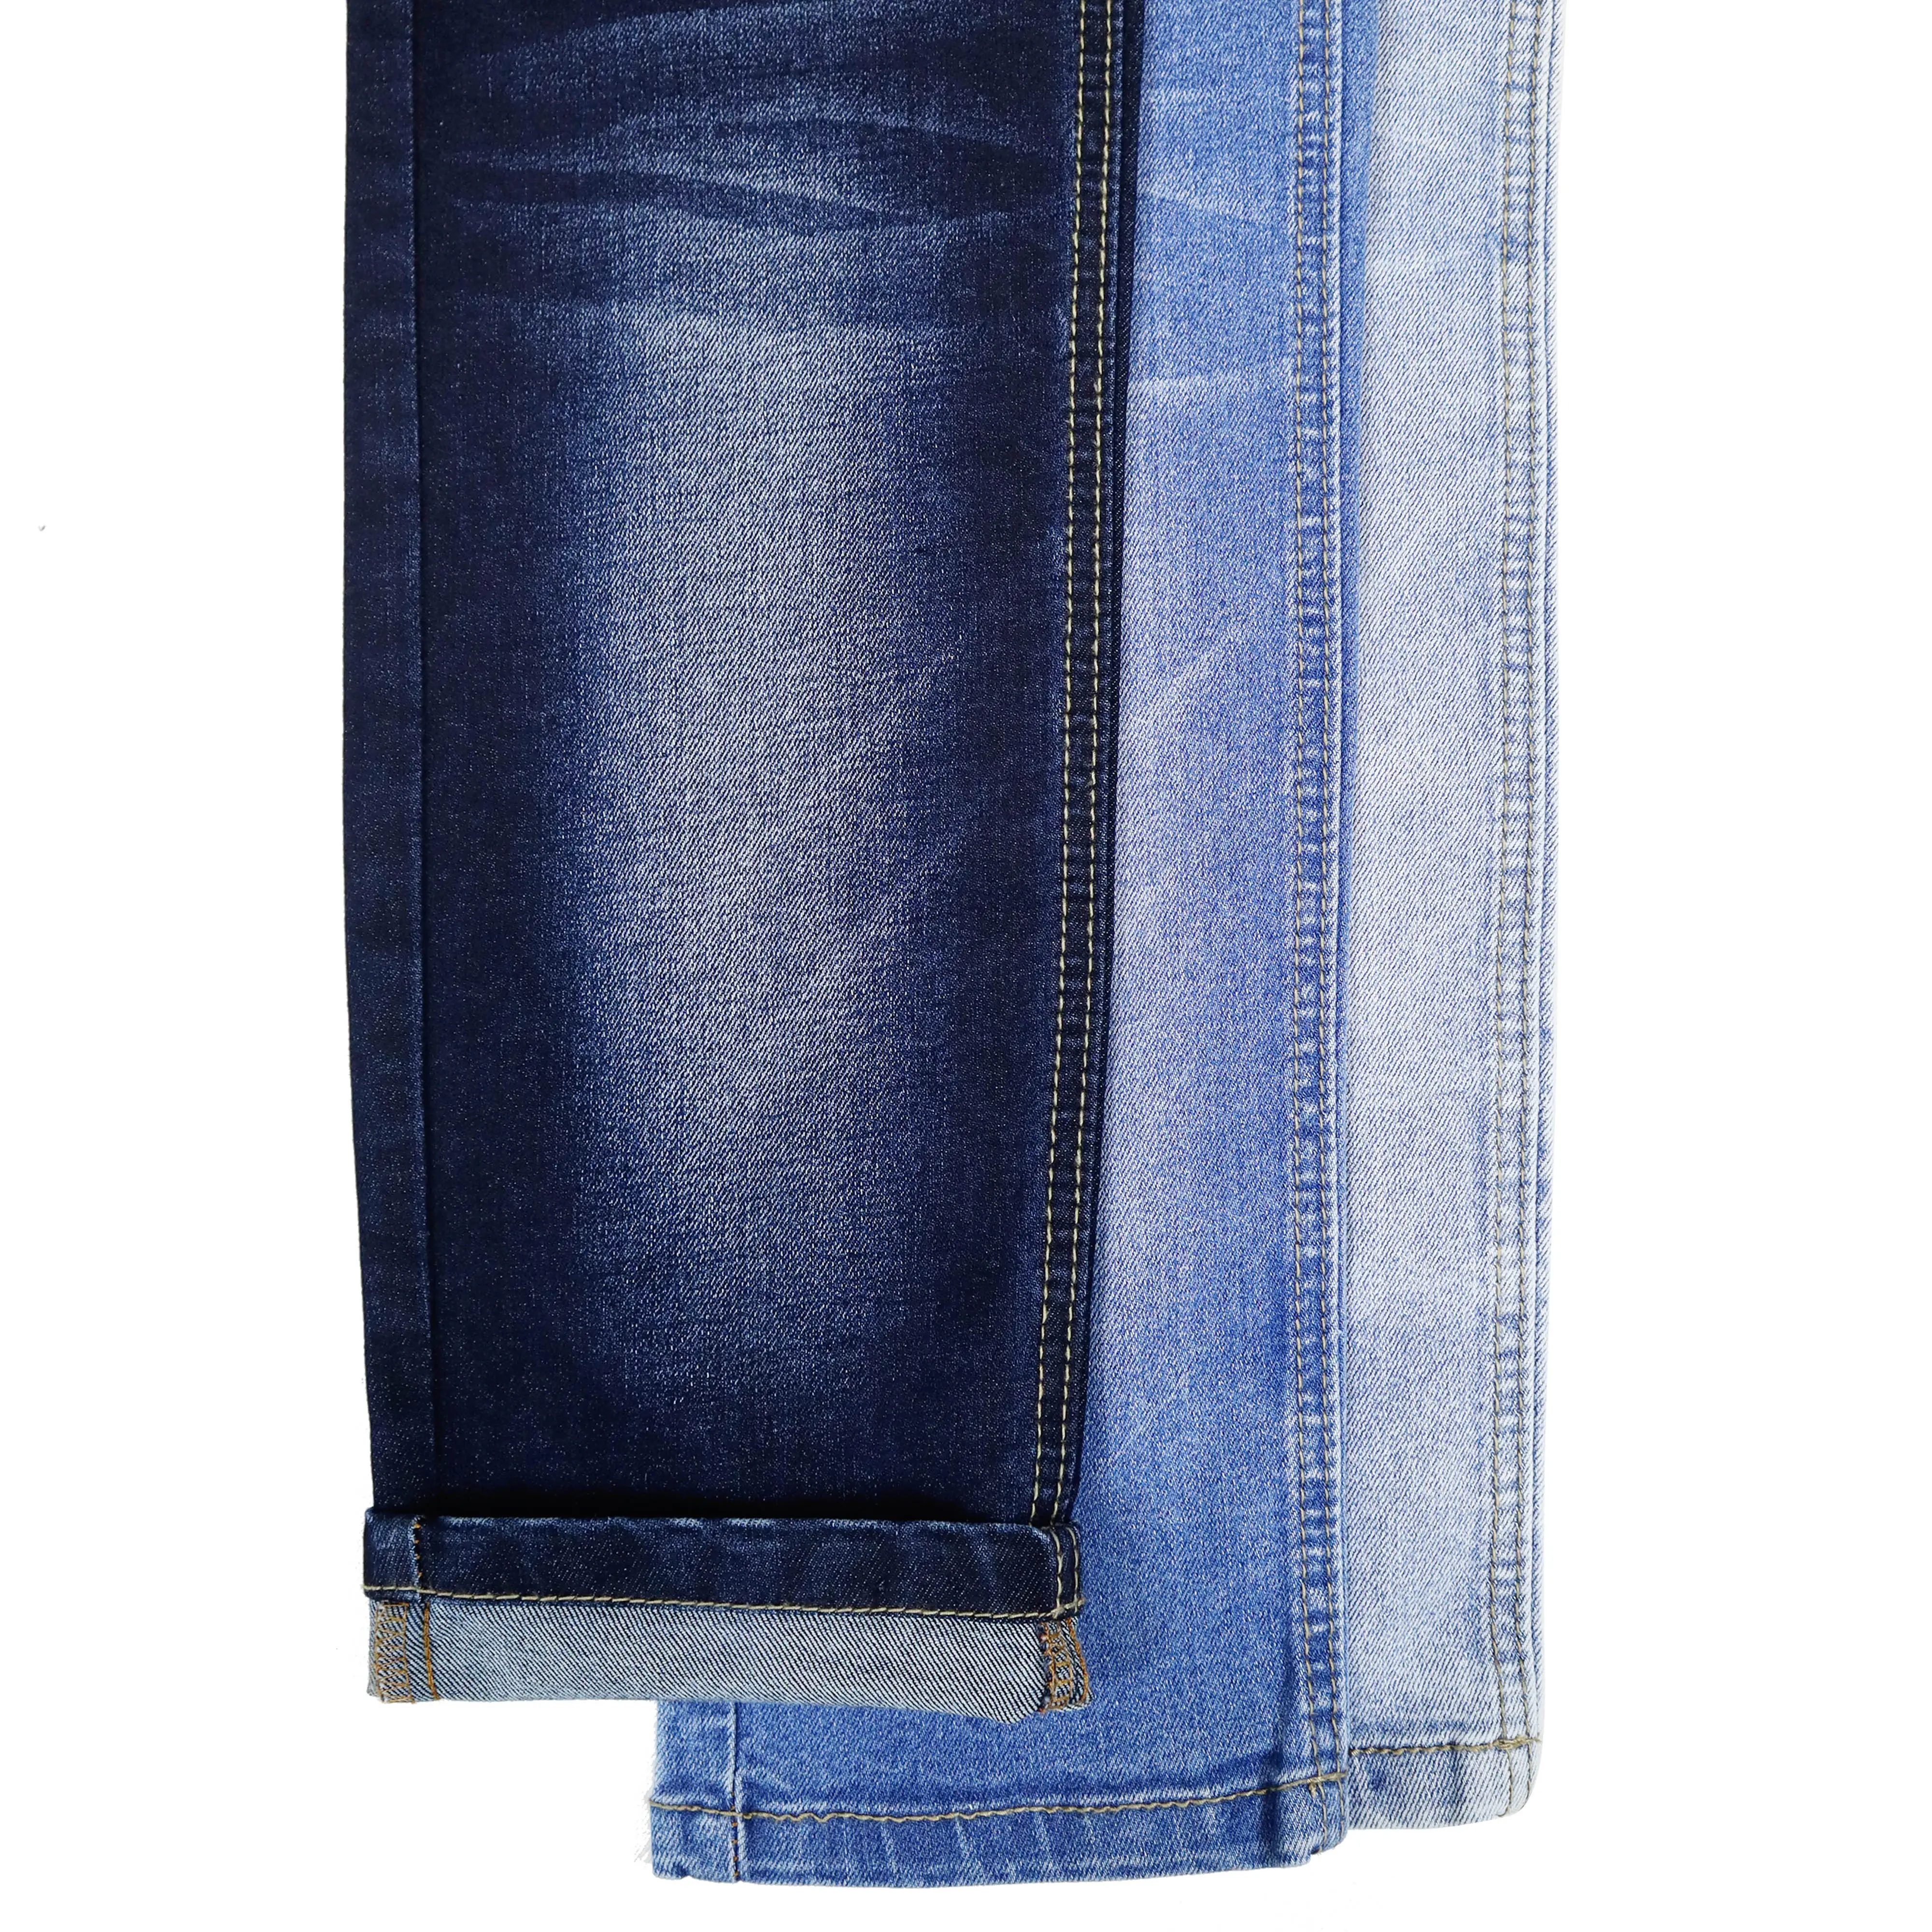 CF-23213 68% algodão 27% poliéster 3% rayon 2% elastano tecido de peso médio com fio de índigo tingido tecido jeans